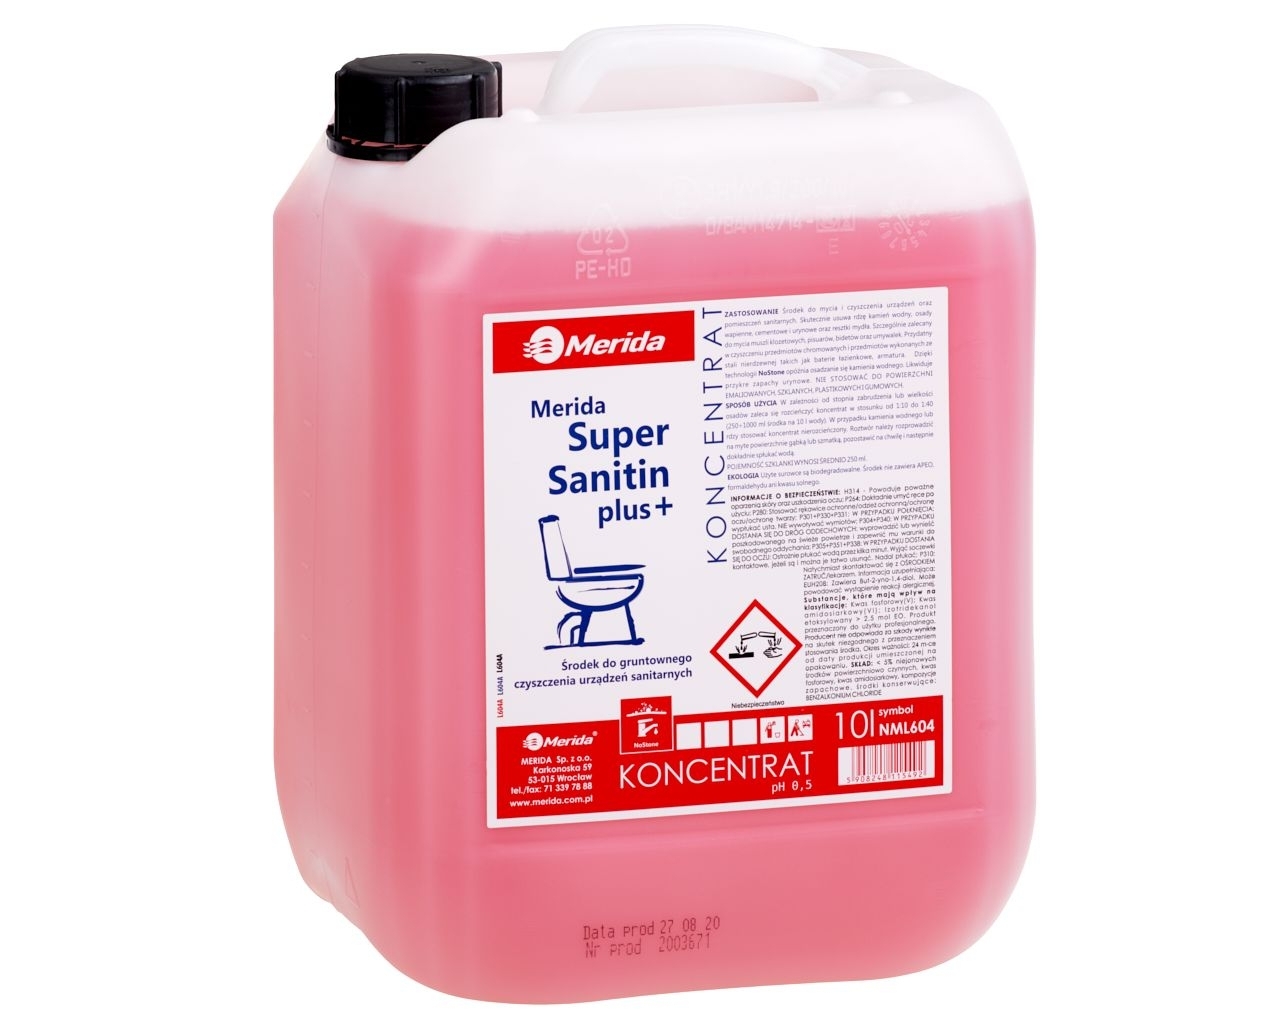 MERIDA SUPER SANITIN PLUS+ Środek do gruntownego czyszczenia urządzeń sanitarnych, kanister 10 l